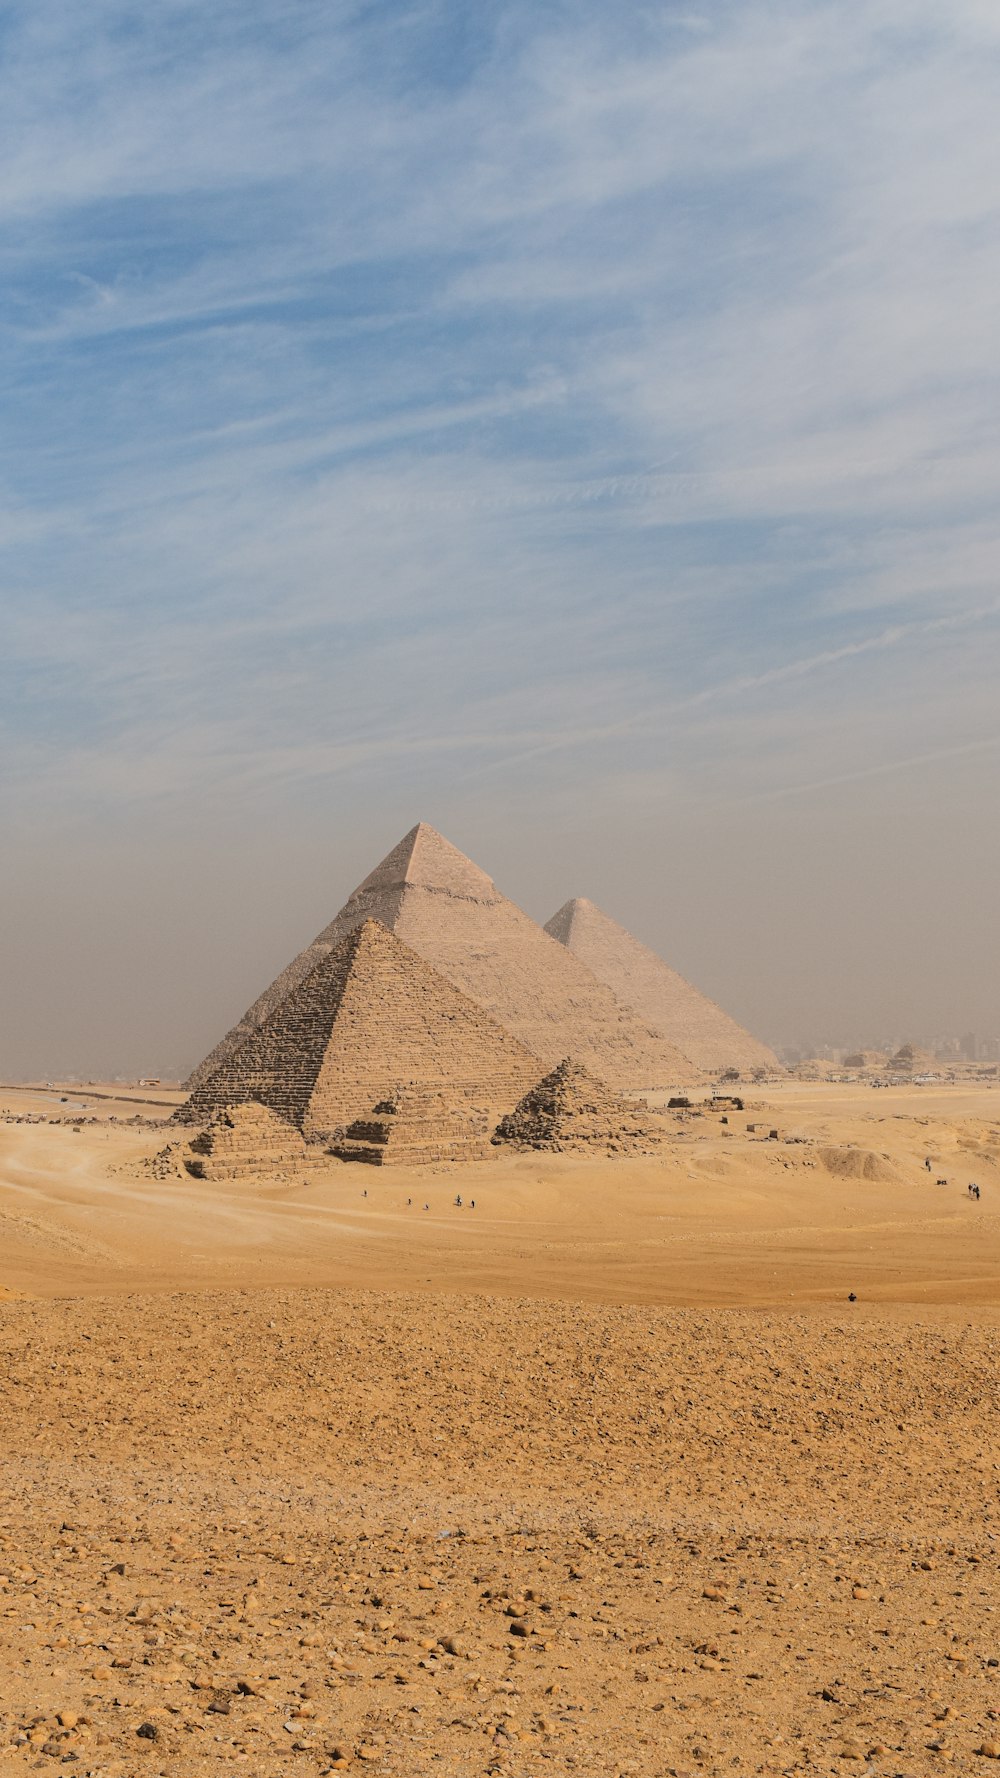 Las pirámides de Giza están en el desierto